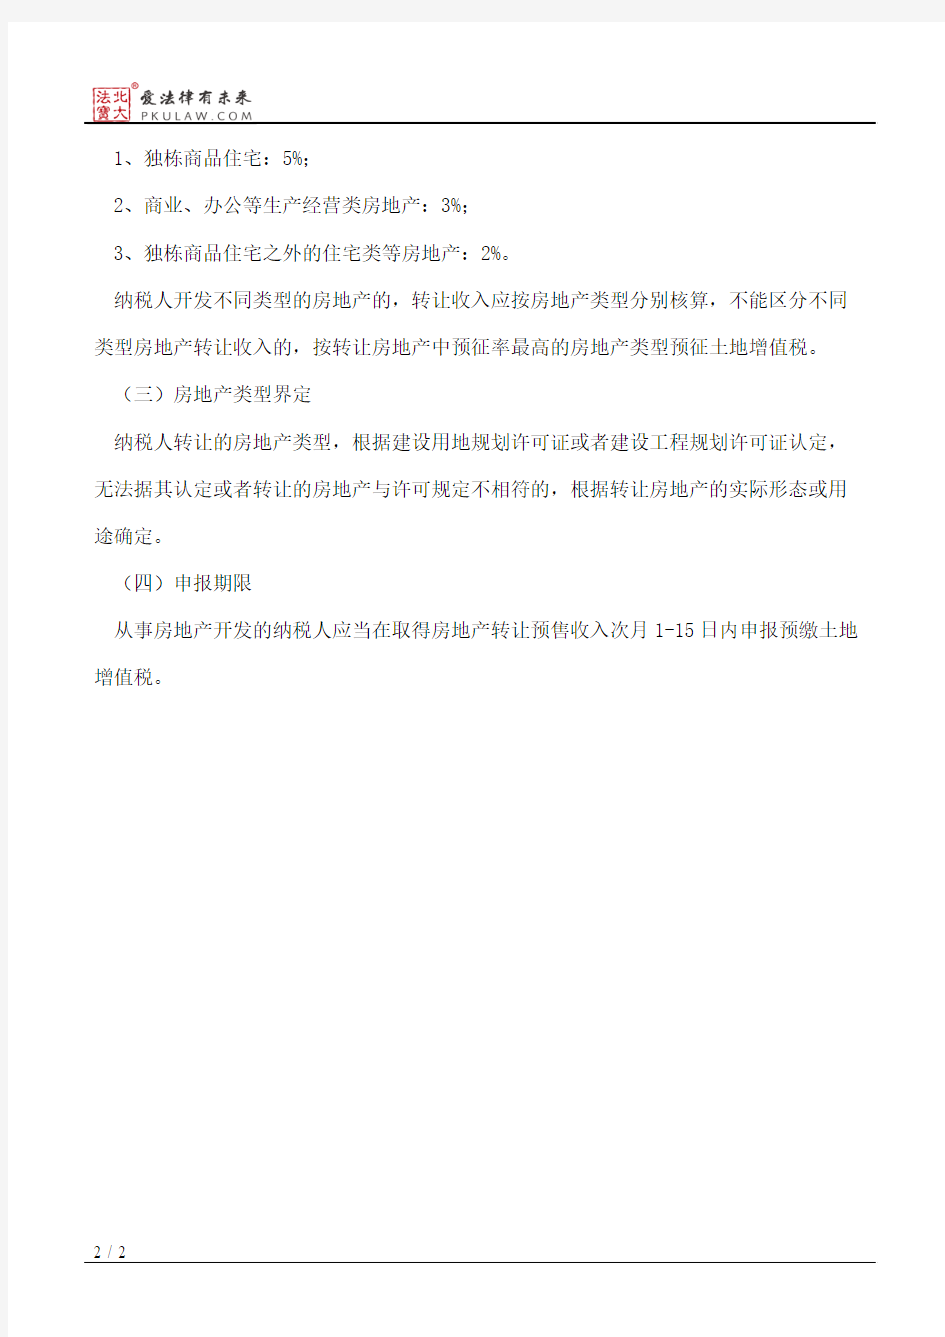 南京市地方税务局关于土地增值税预征和核定征收问题的公告